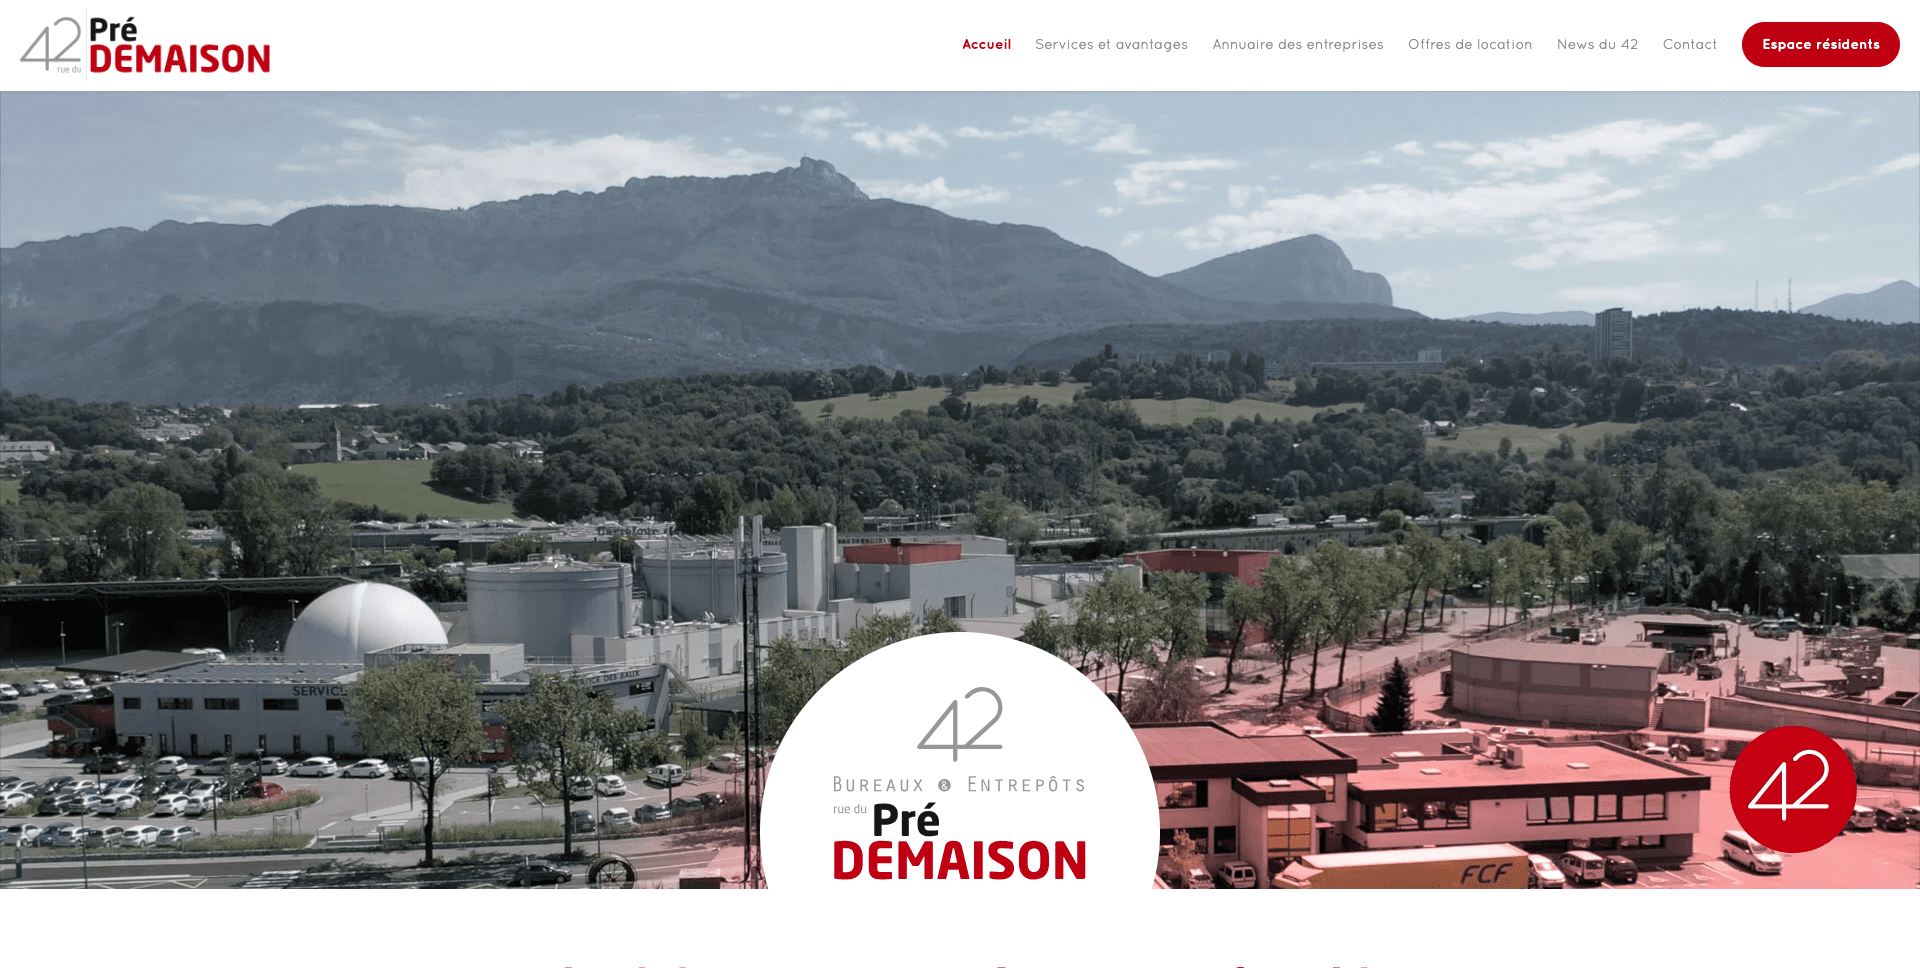 Création site internet location de bureaux et entrepôts à Chambéry